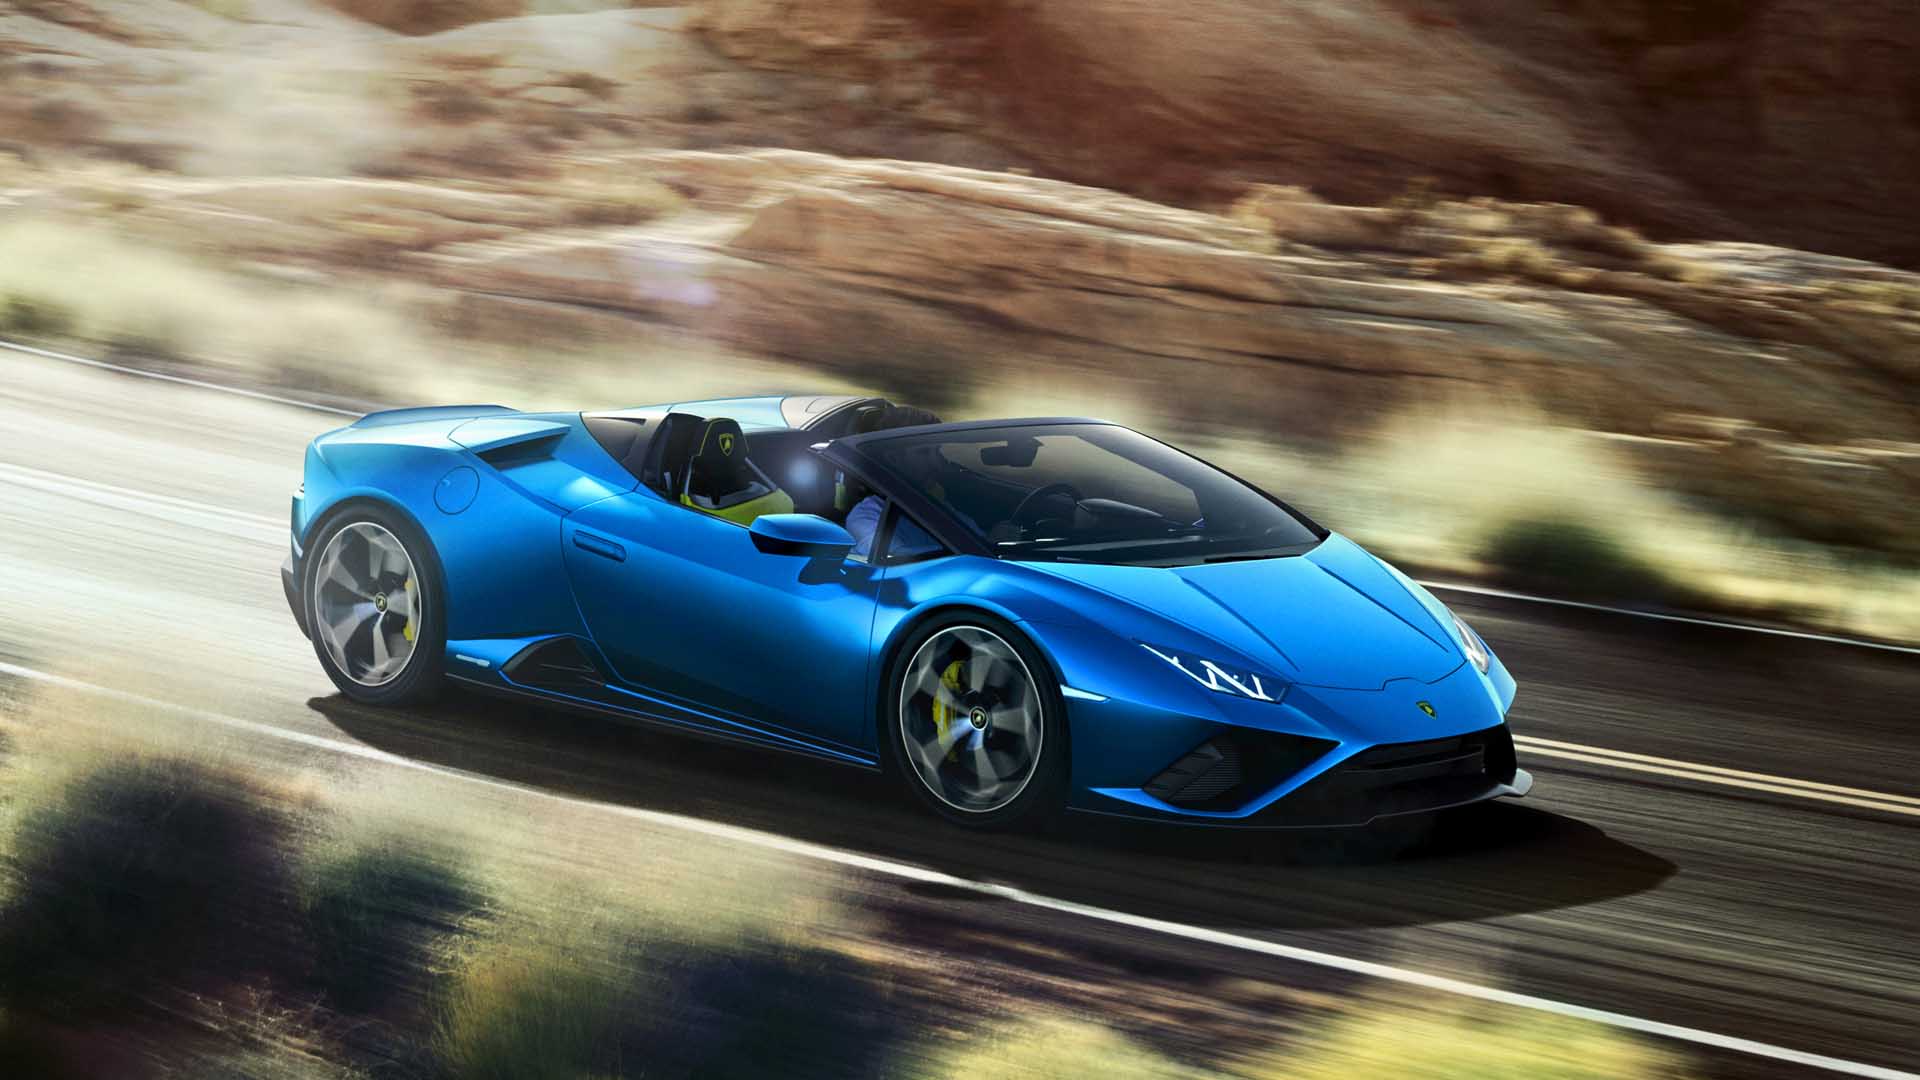 Lamborghini Huracan Convertible Cars For Sale | AutoTrader UK